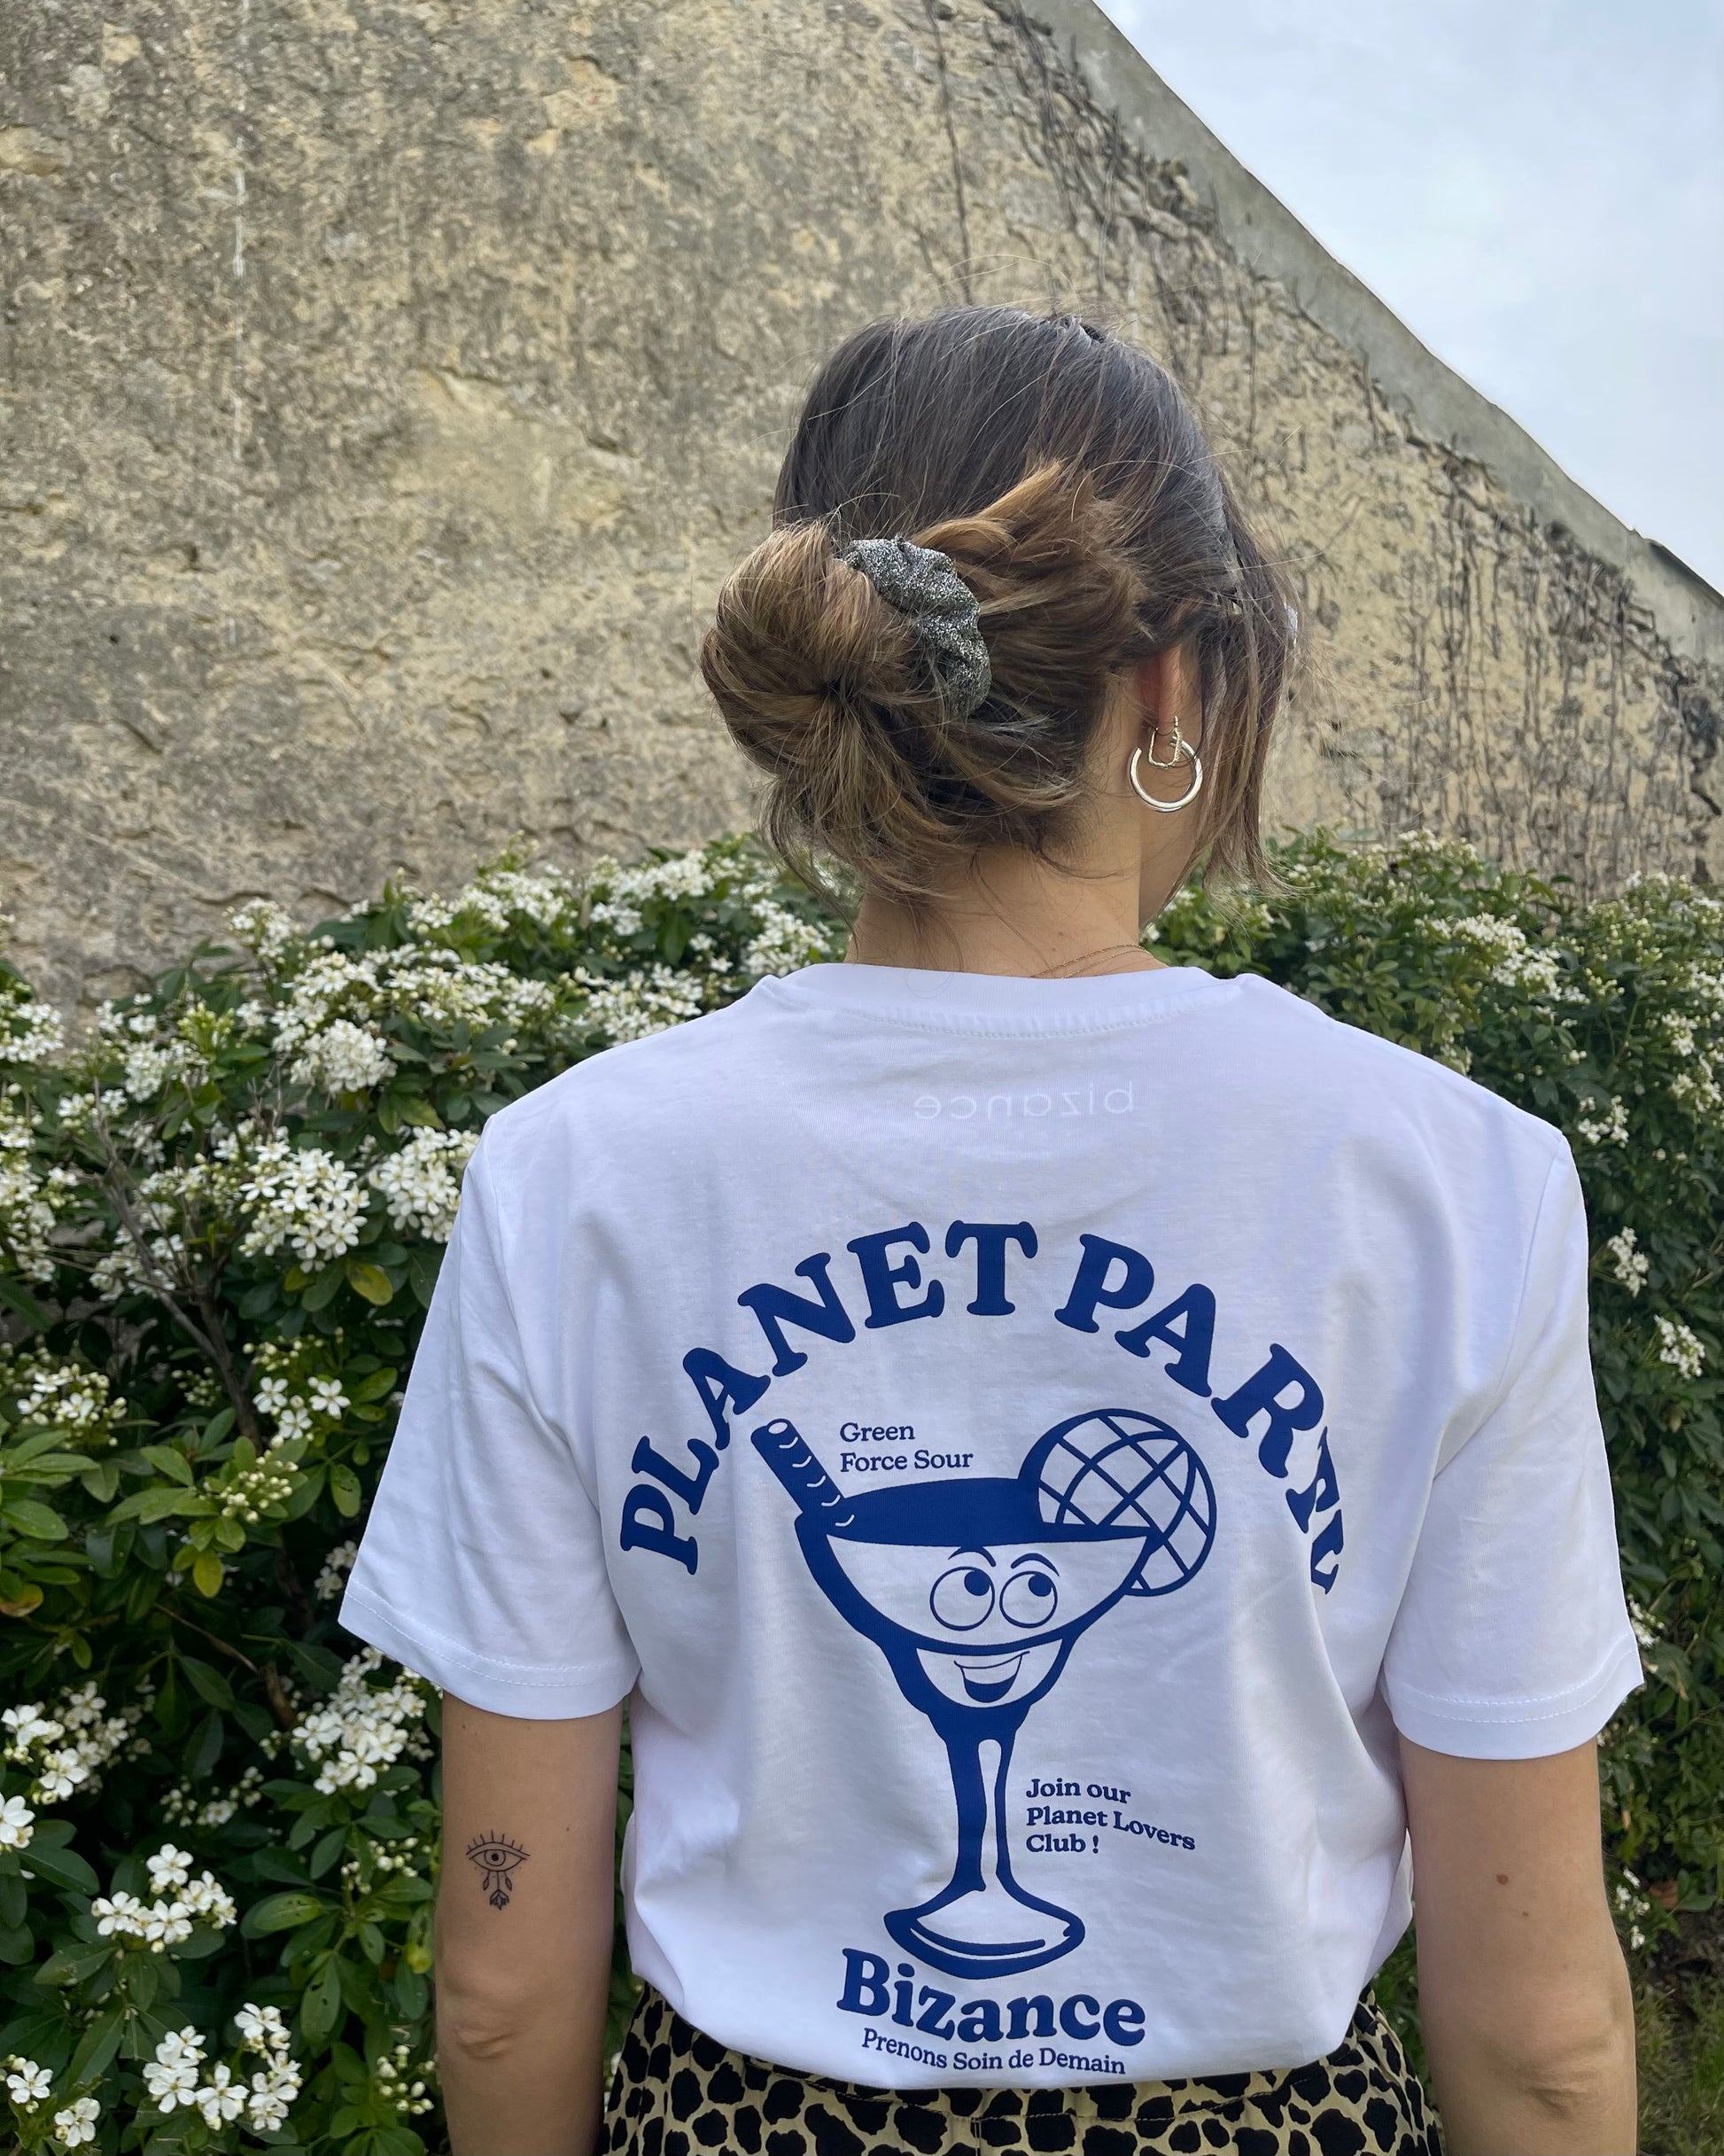 Tee-shirt Bizance Paris blanc imprimé verre bleu marine. Inscription Planet Party